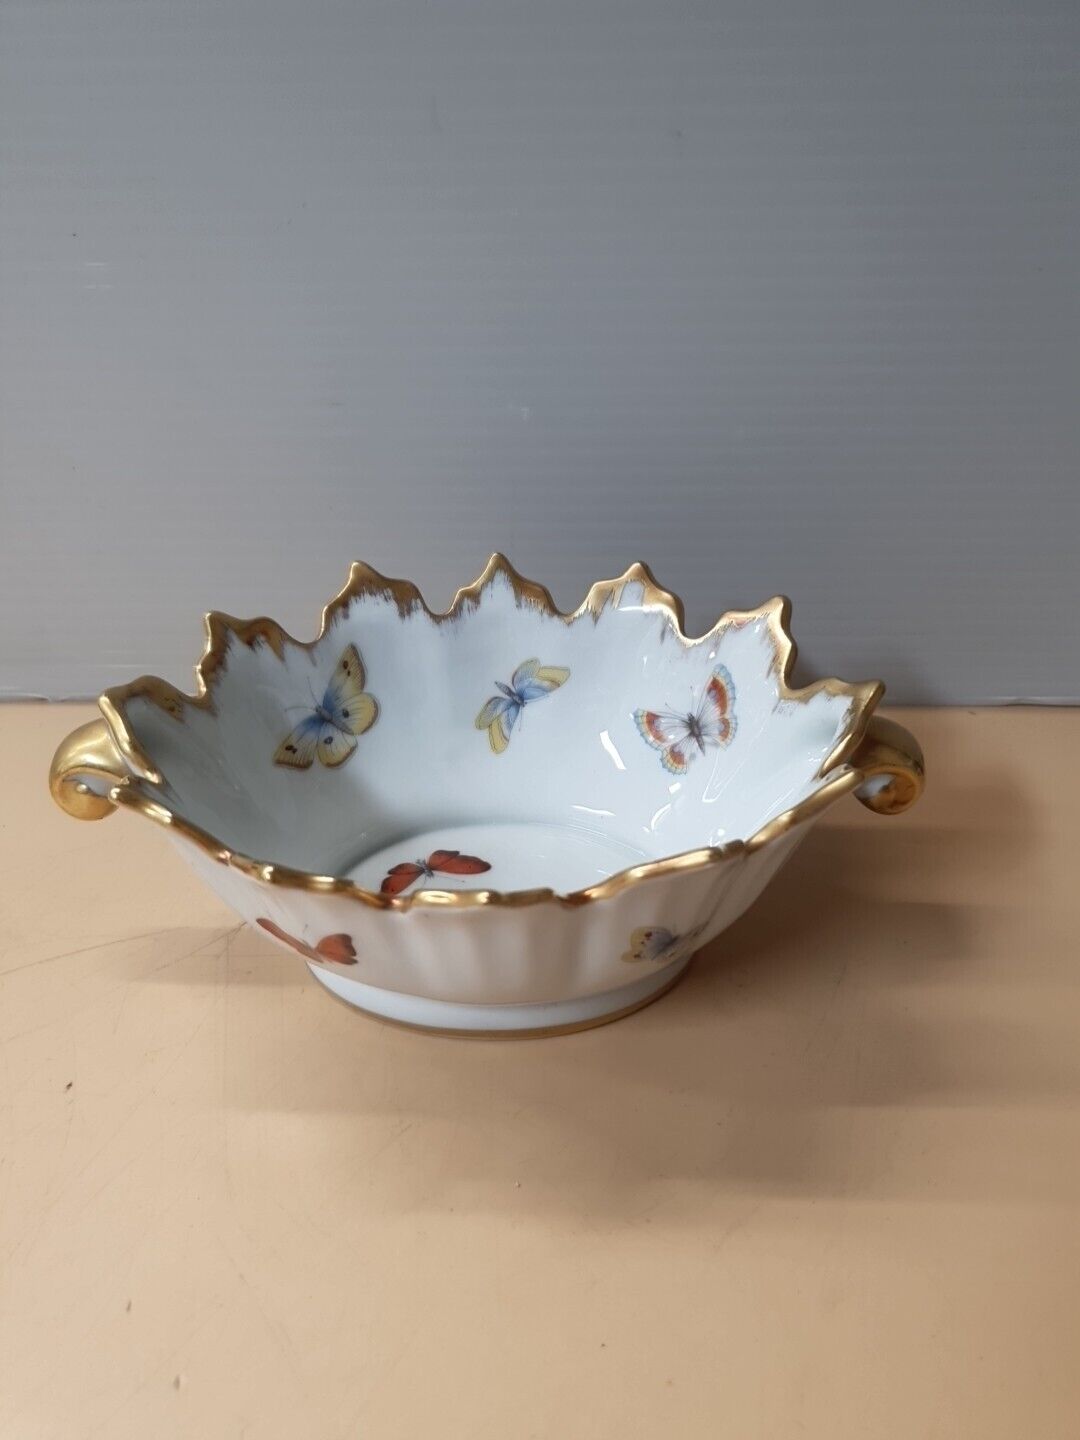 Vintage Limoges France Porcelain Butterfly Bowl Dish Gilt Trim Handles